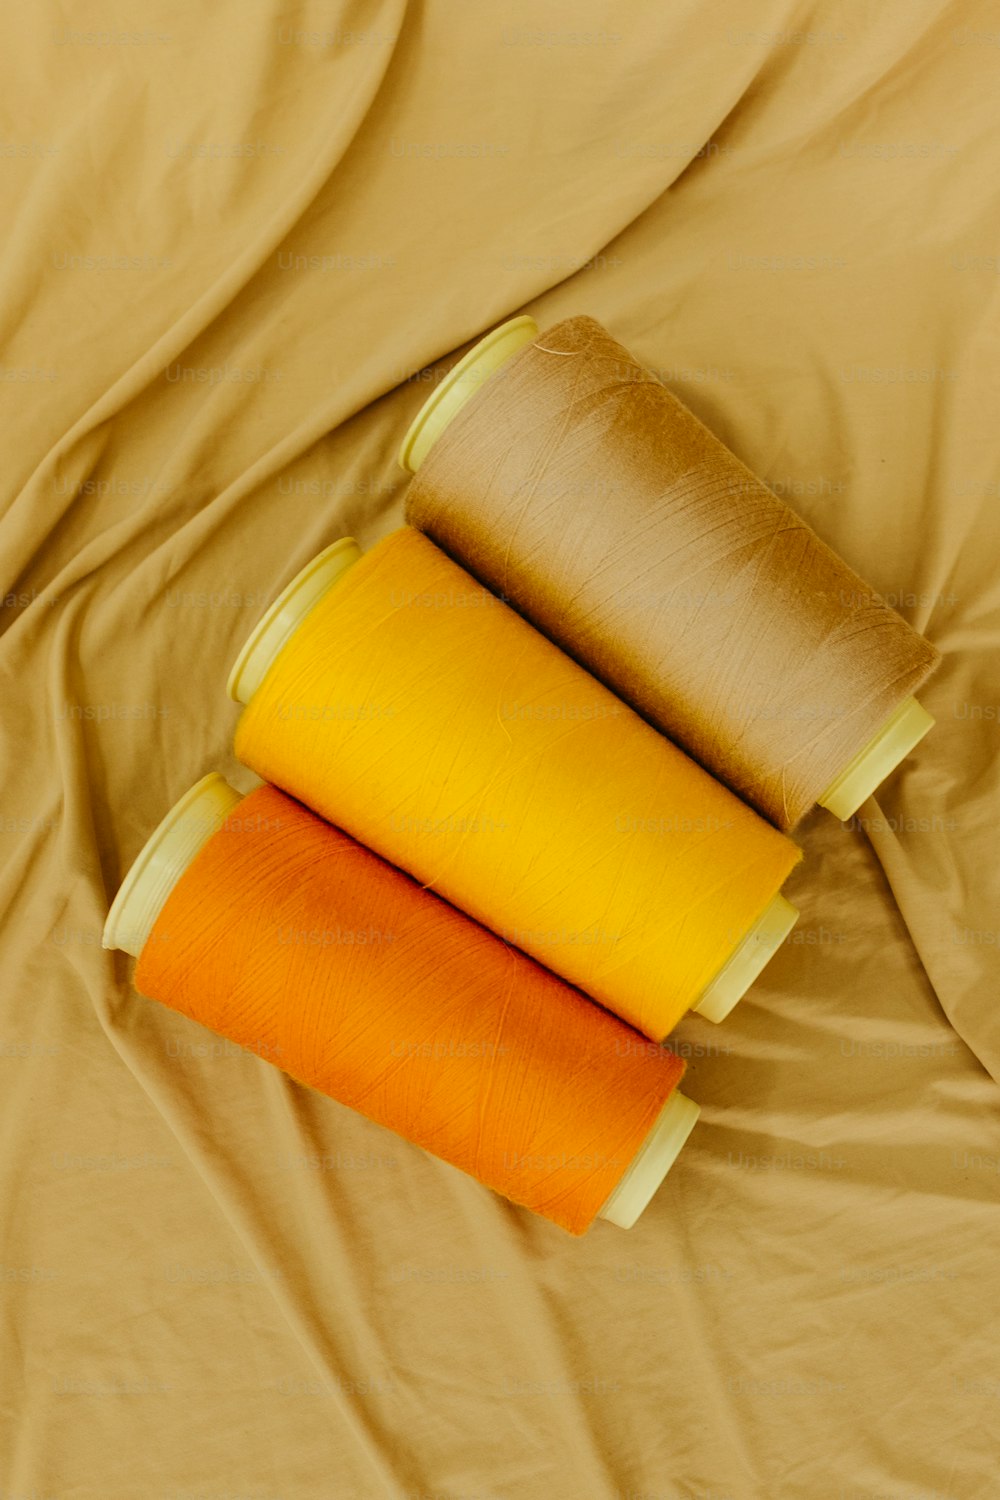 trois rouleaux de tissu jaune et orange sur un lit